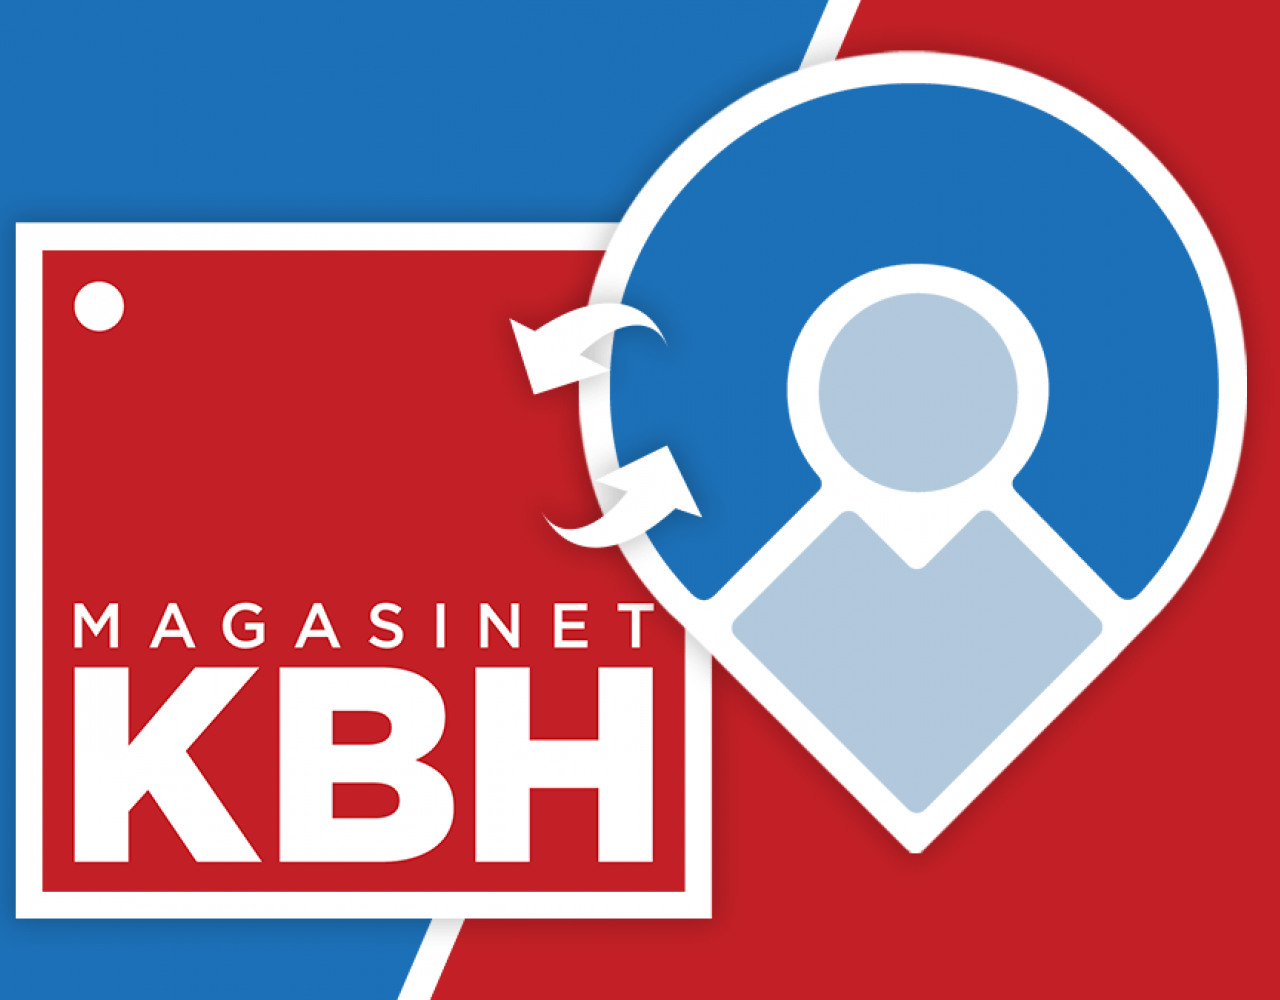 magasinet kbh citychange logo